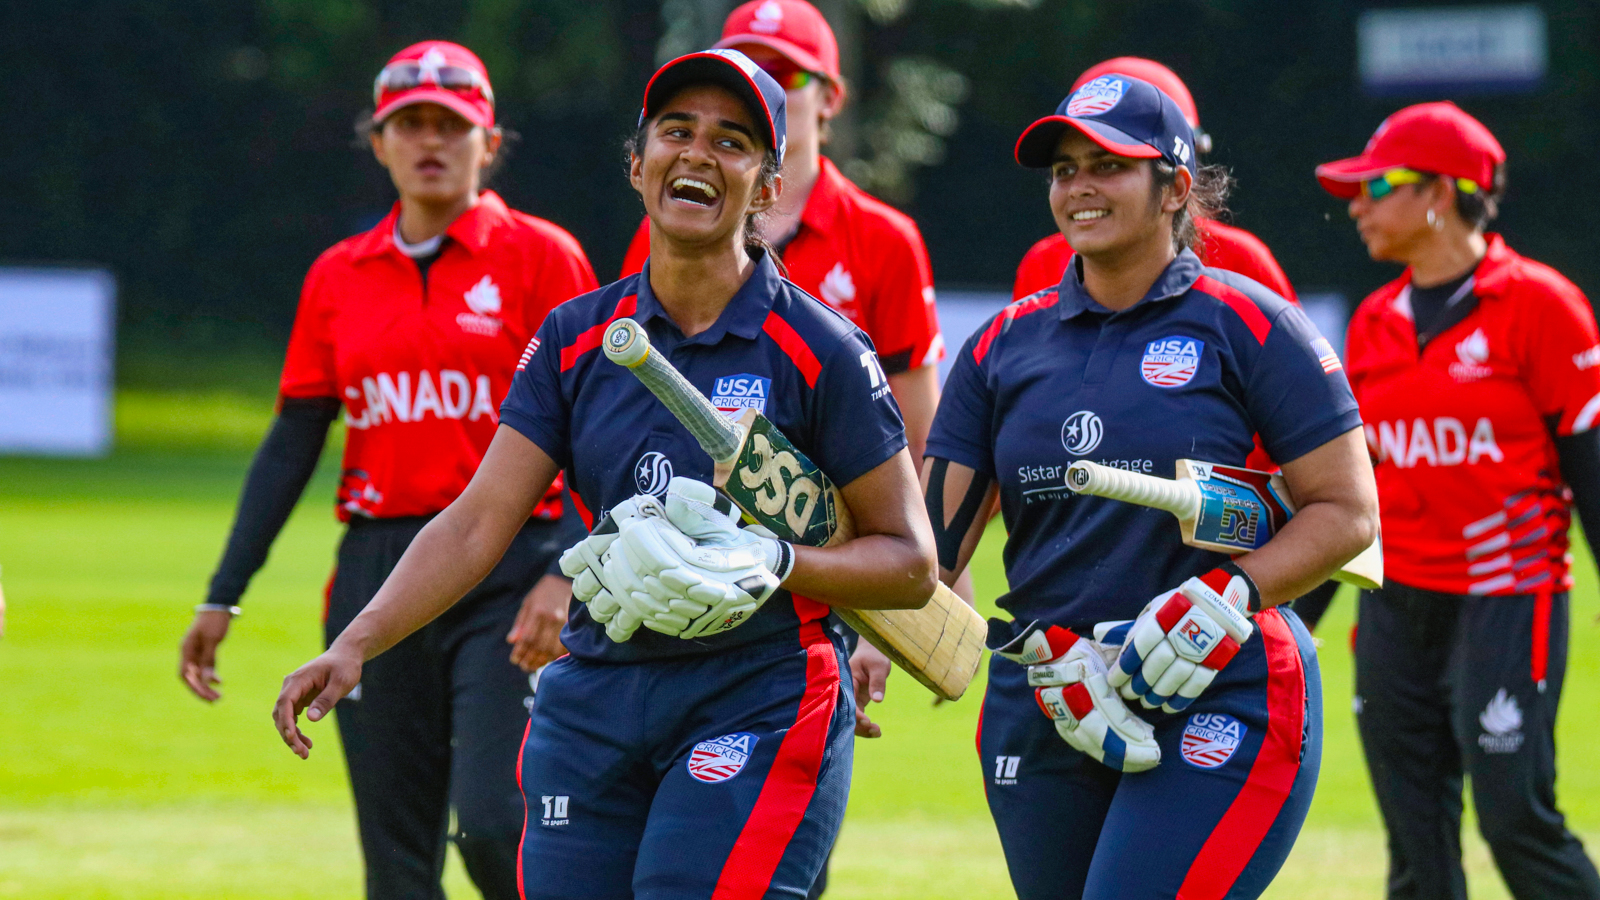 Watch: Bizzare Scenes In USA vs Canada Women’s Cricket Game